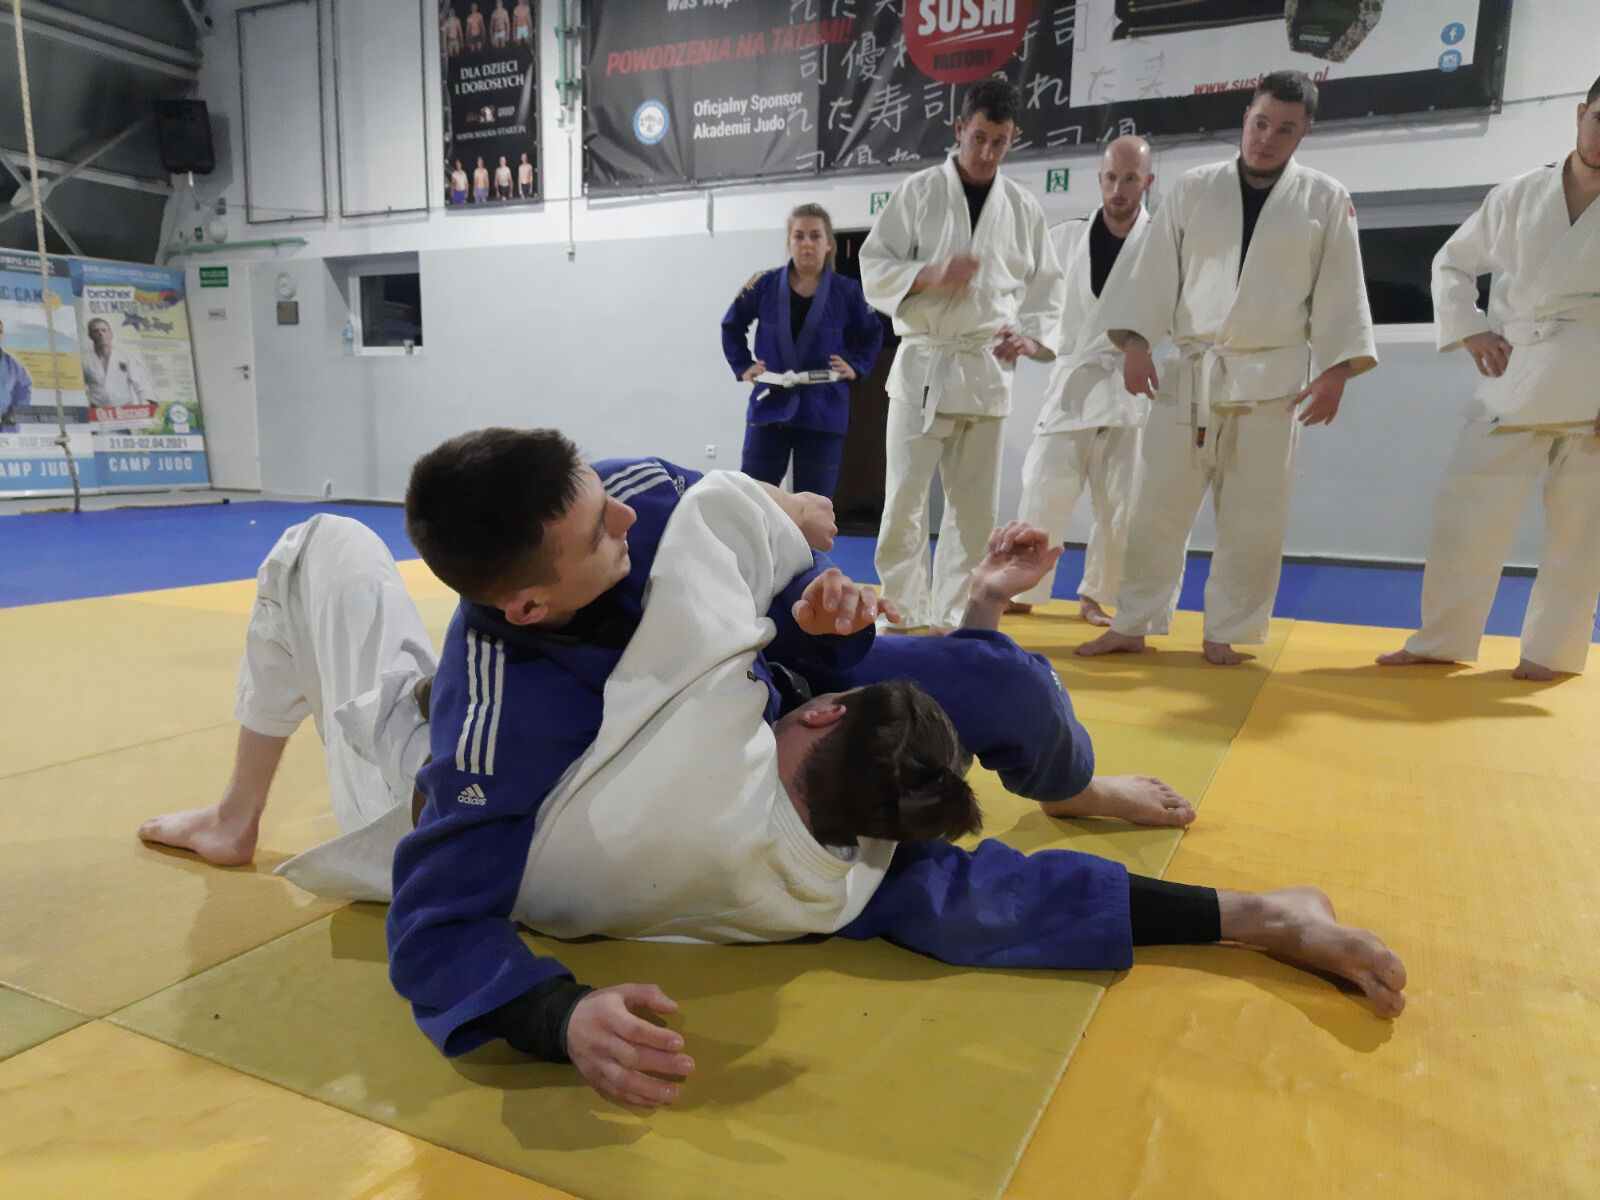 zawodnicy w białym i niebieskim judogo podczas pokazu walki na macie - grafika artykułu